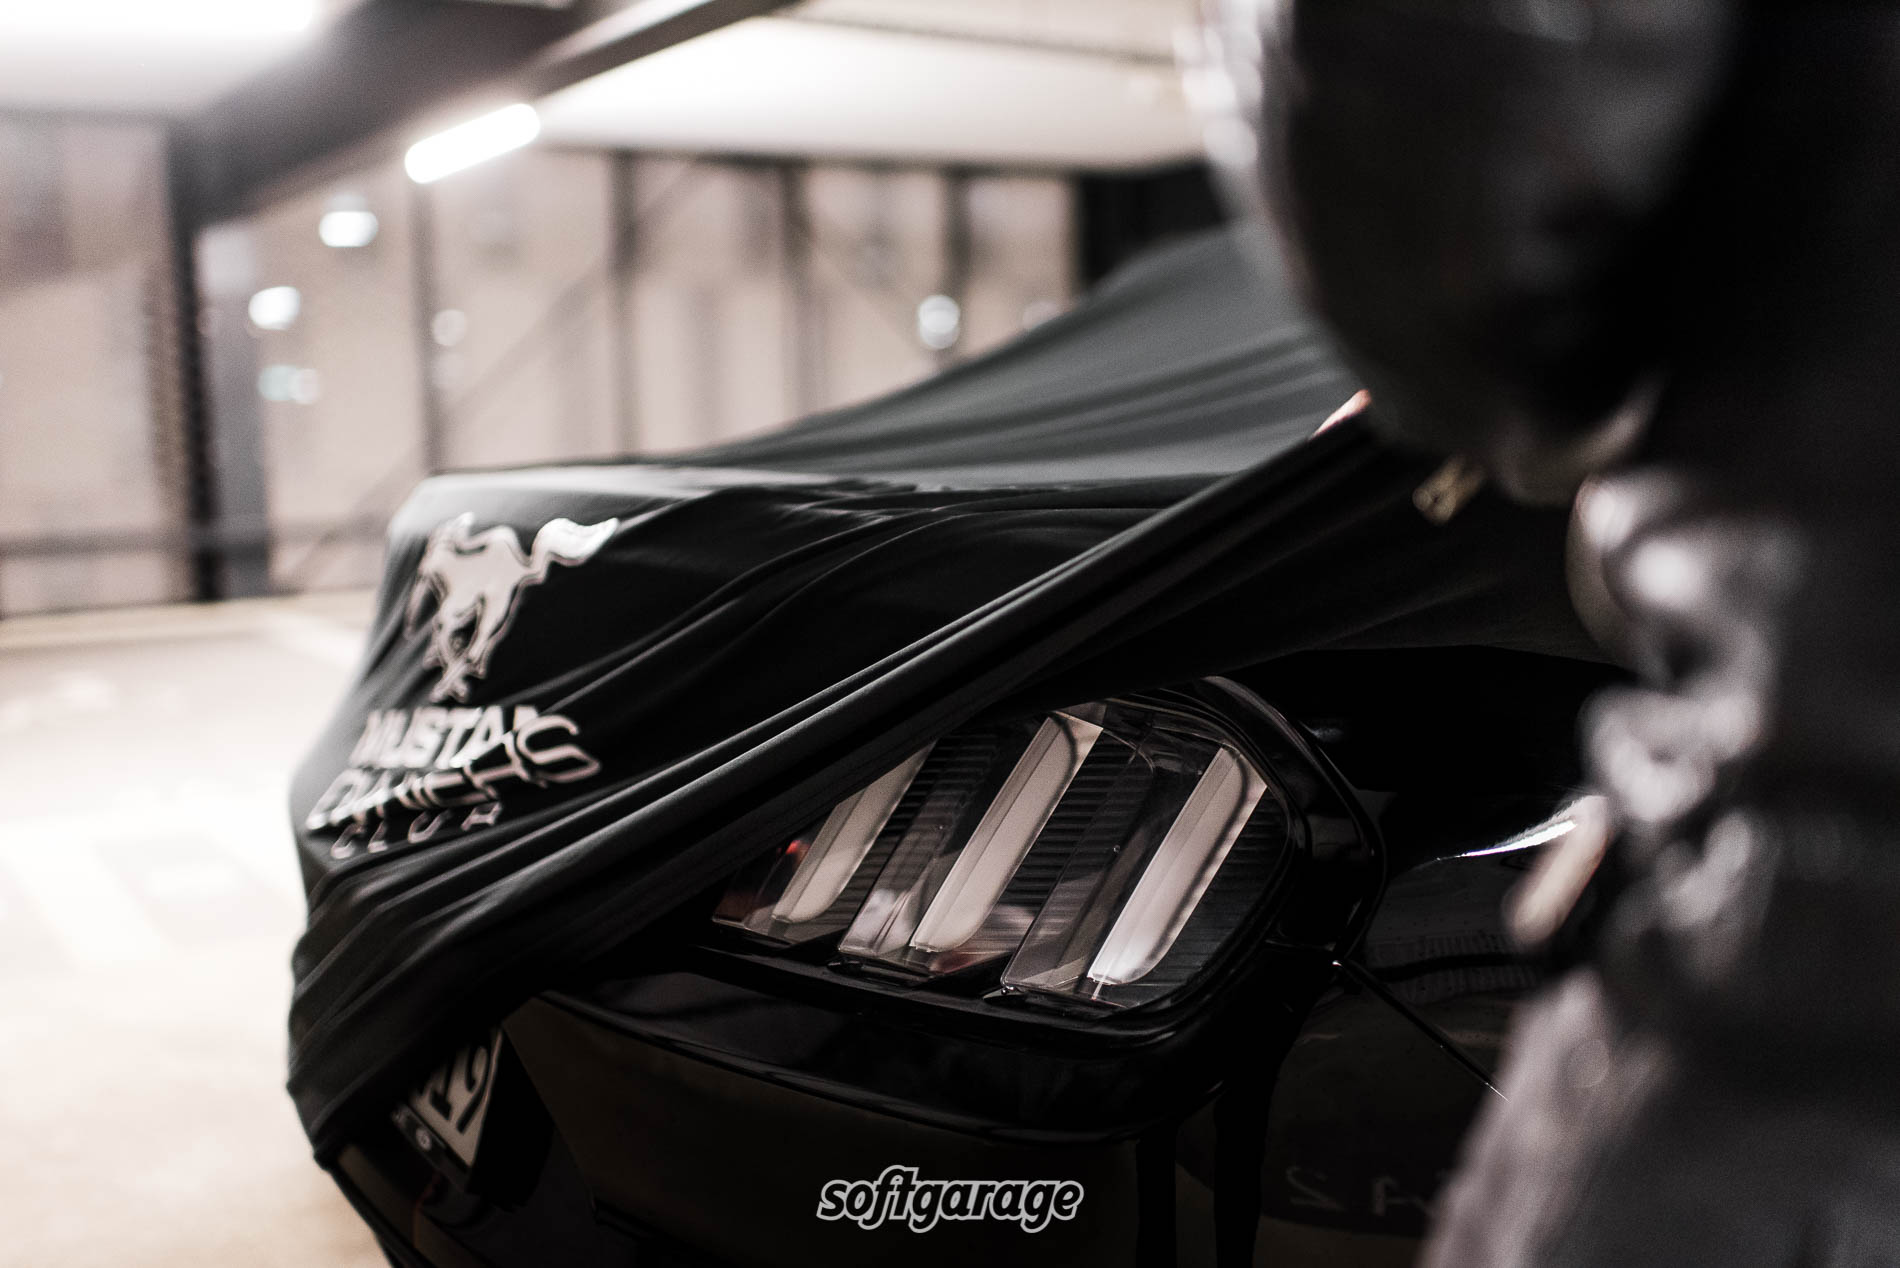 Autogarage Abdeckung Autoabdeckung für Ford Mustang/Mustang GT